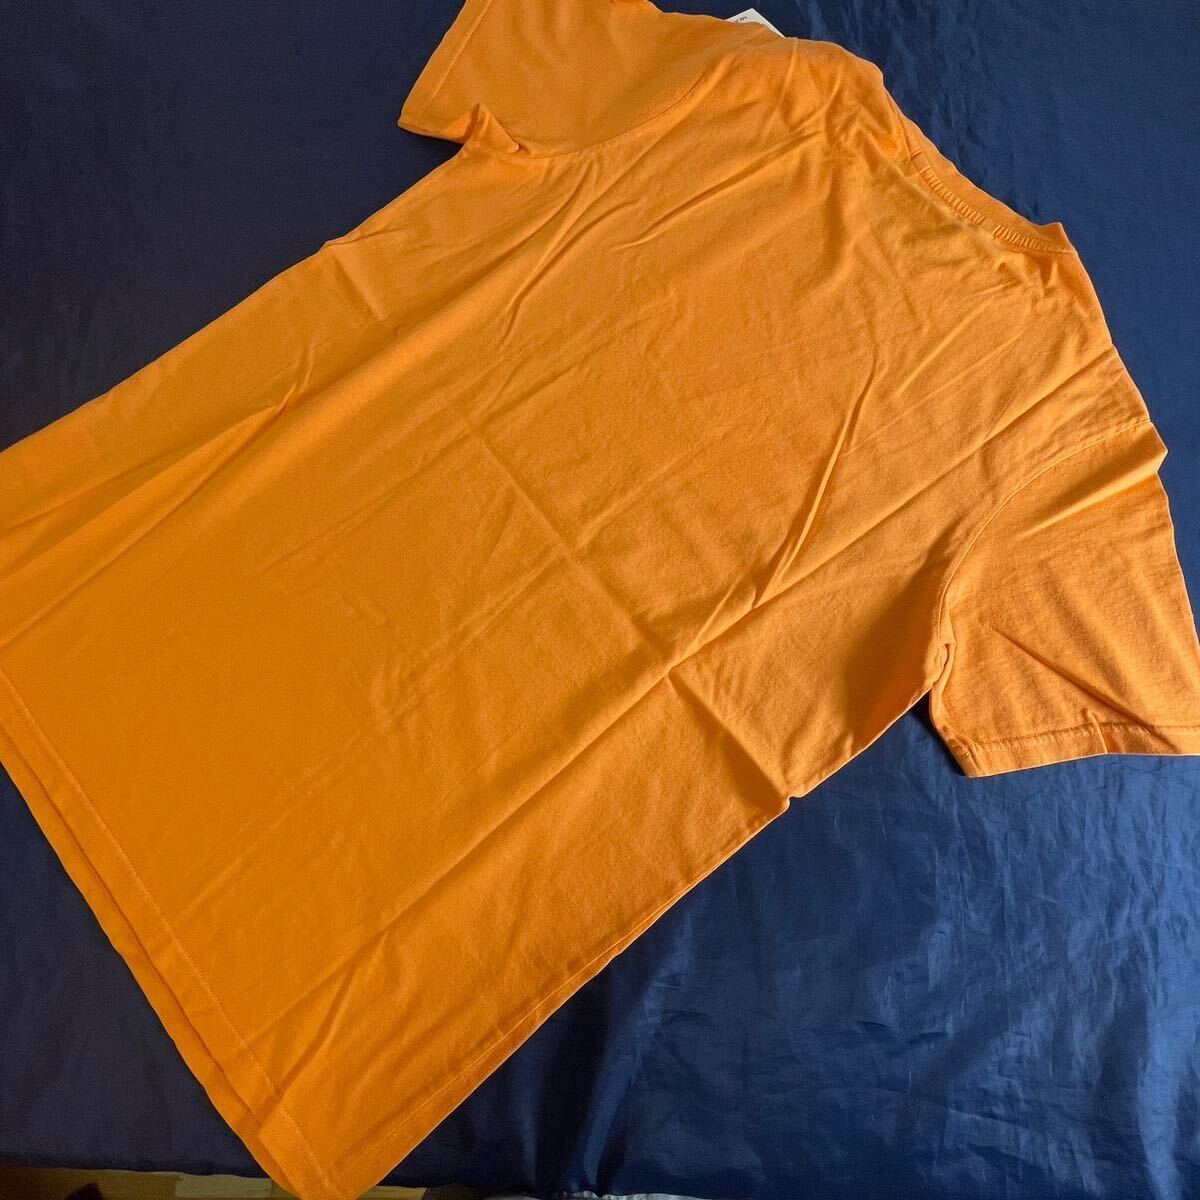 新入荷 本物 新品 40637205 MONCLER モンクレール/ジーニアス/1952/サイズL 大人気 限定高級ブランド SAND BOARD 半袖Tシャツ カットソー の画像7